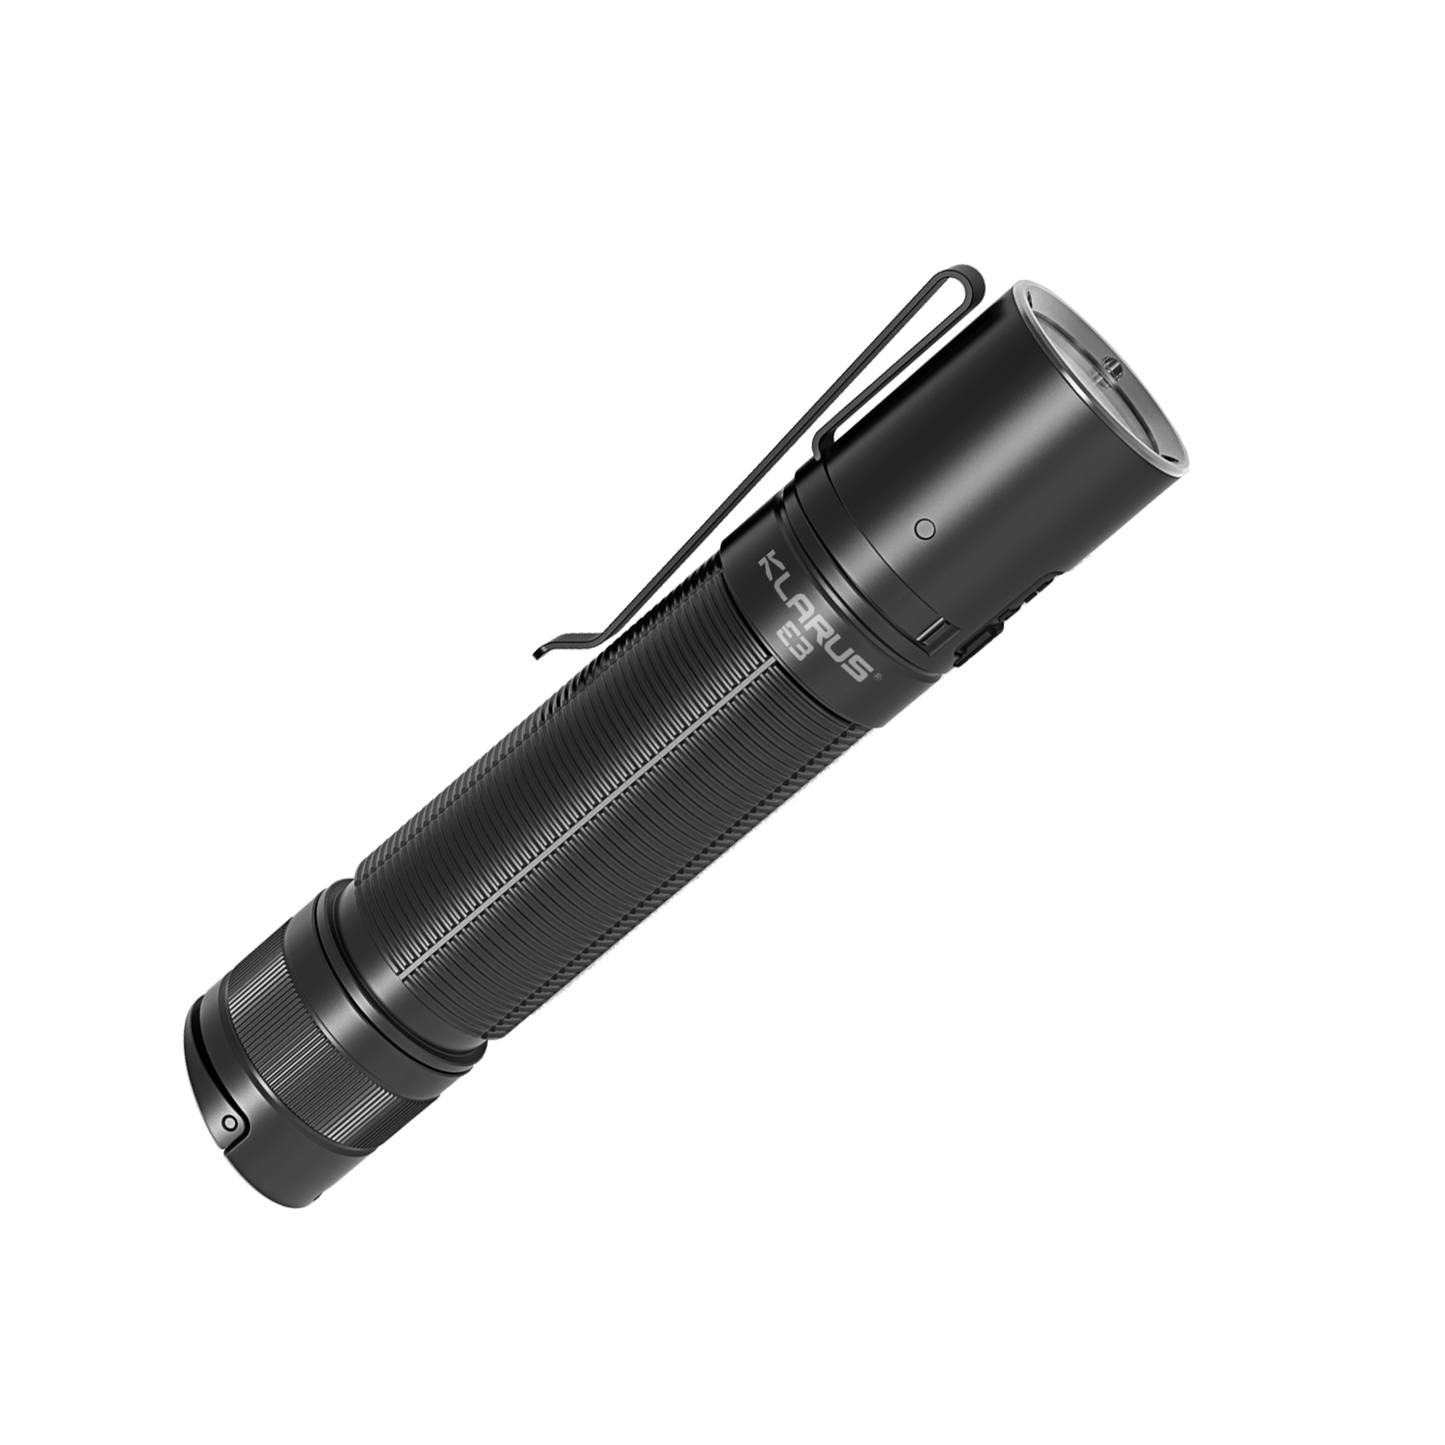 Klarus E3 2200 Lumen Compact USB-C Rechargeable Torch